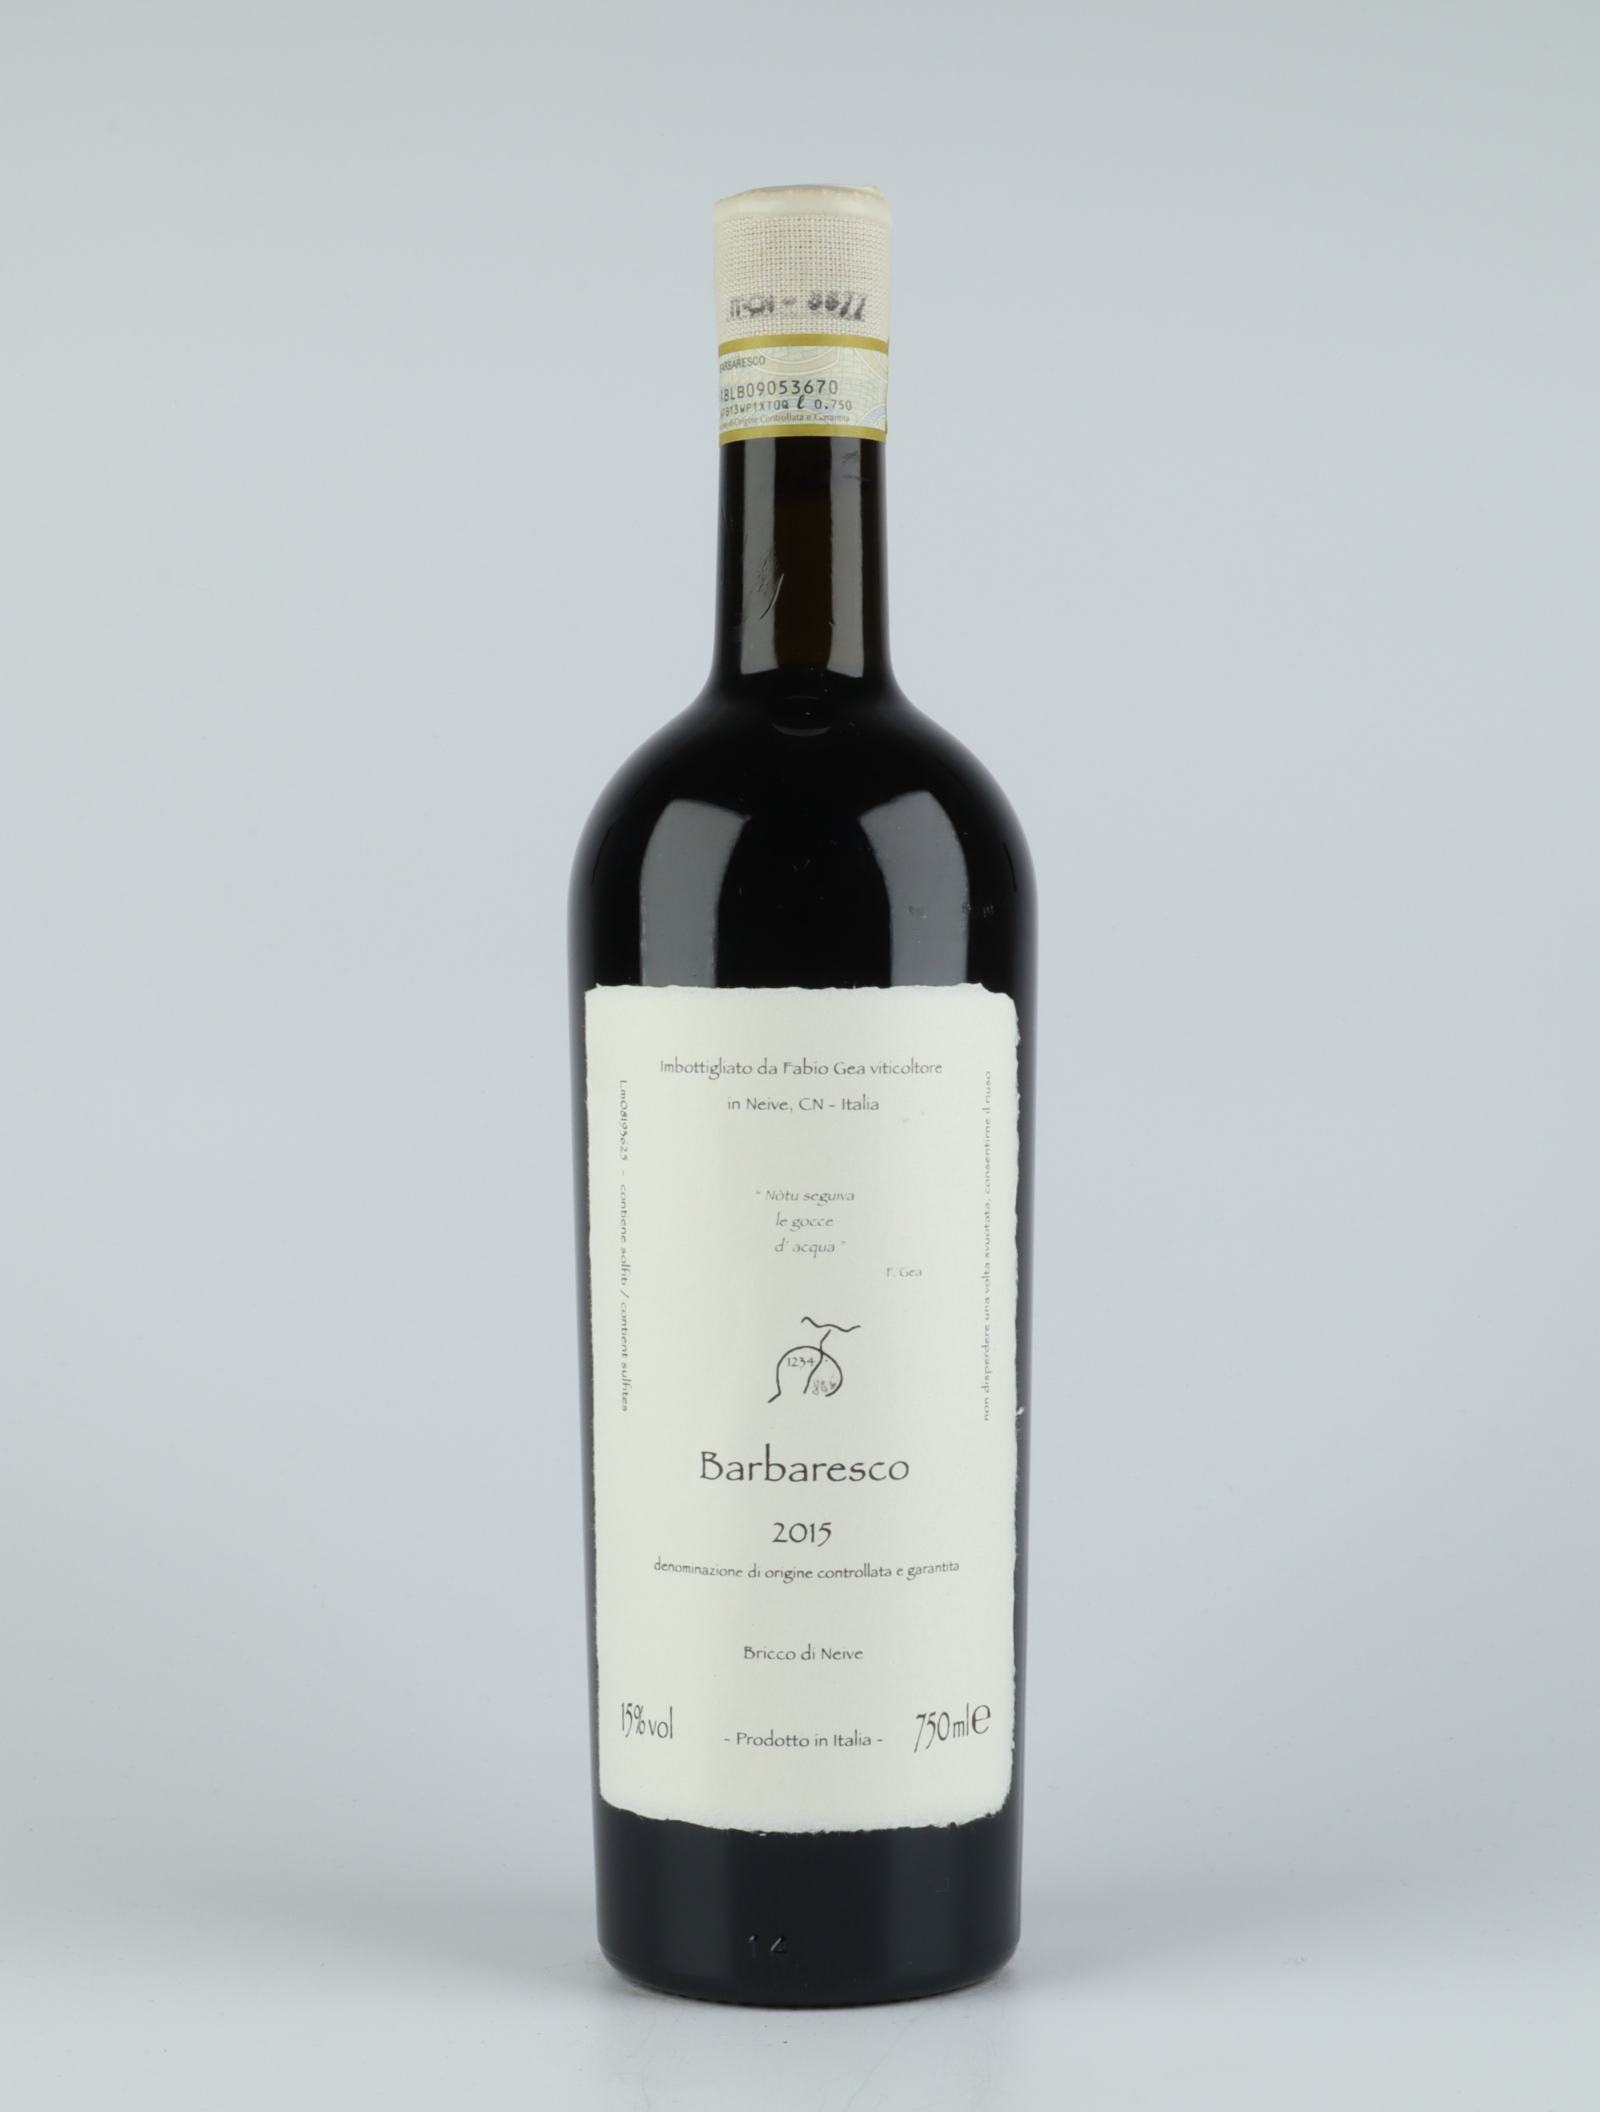 A bottle 2015 Barbaresco Red wine from Fabio Gea, Piedmont in Italy